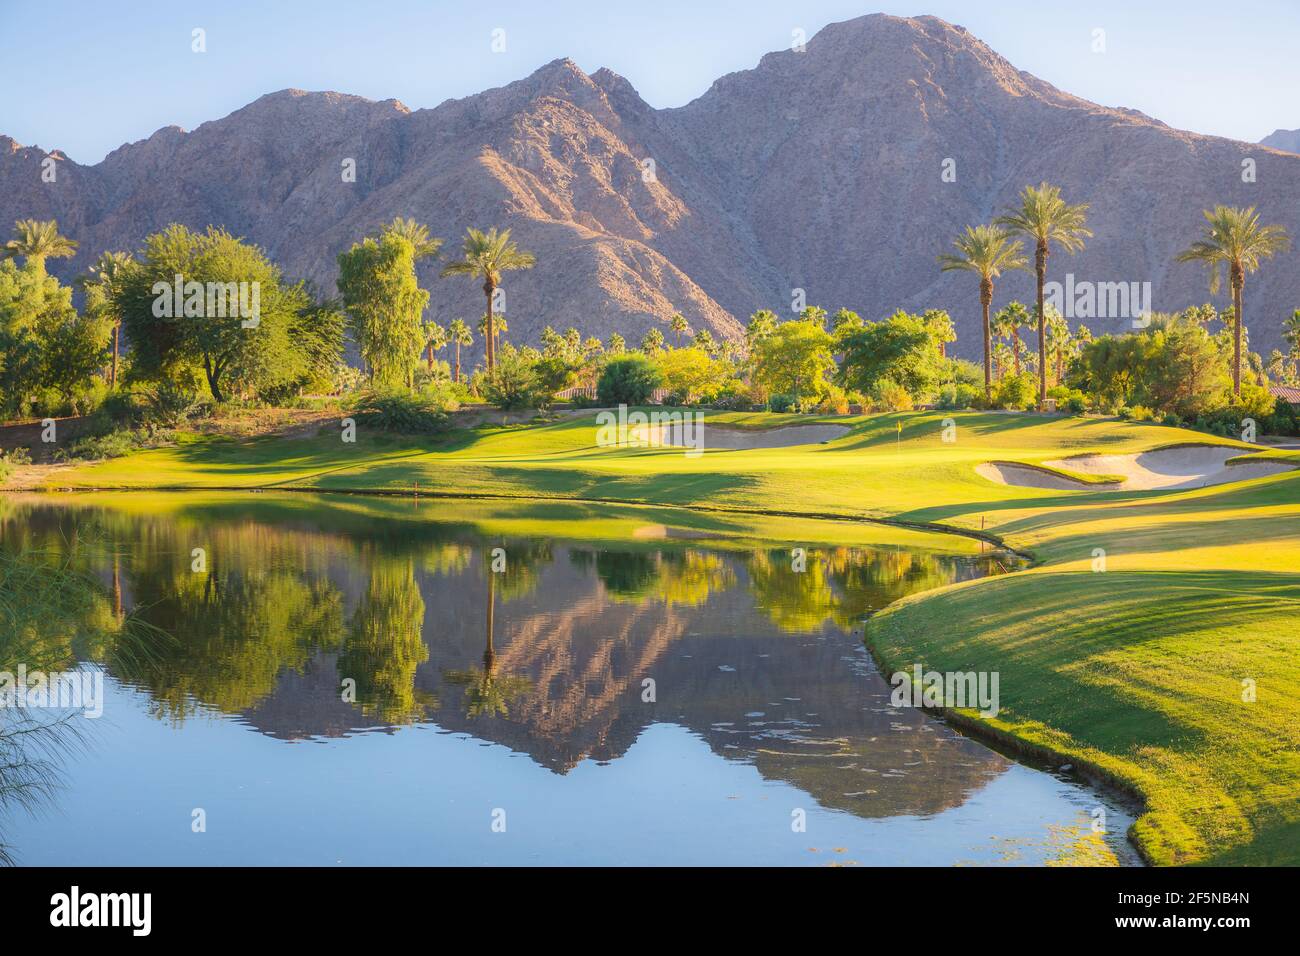 Hermosa luz dorada sobre Indian Wells Golf Resort, un campo de golf en el desierto en Palm Springs, California, Estados Unidos con vista a las montañas de San Bernadino. Foto de stock